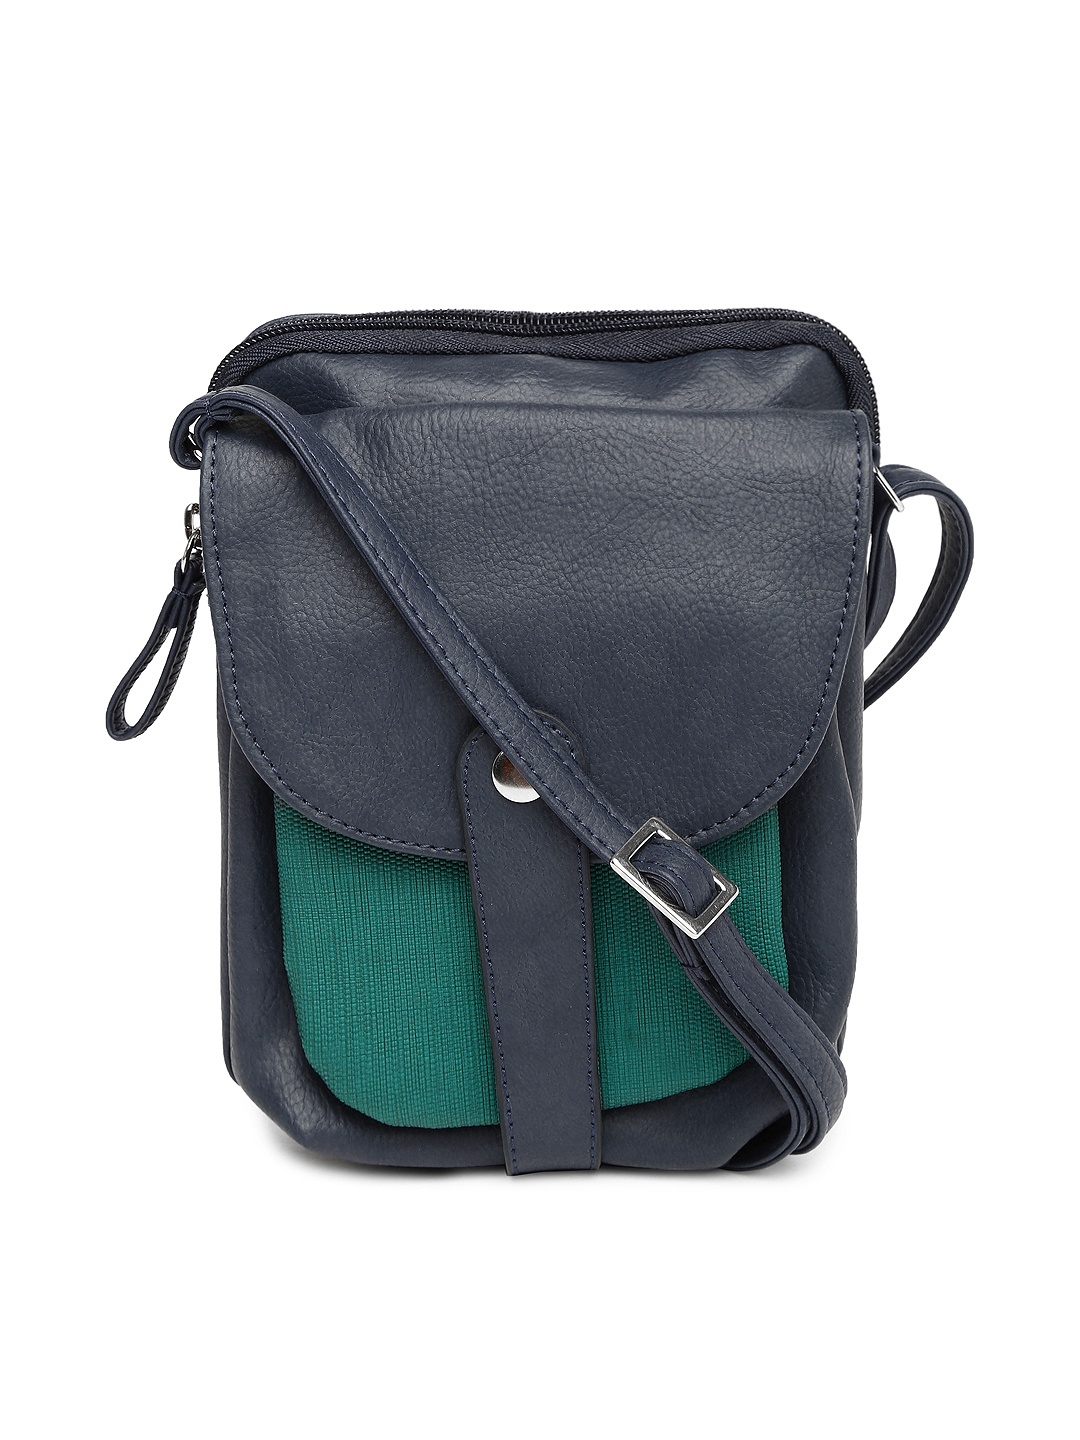 Myntra Baggit Navy Sling Bag 700287 | Buy Myntra Baggit Handbags at best price online. All ...